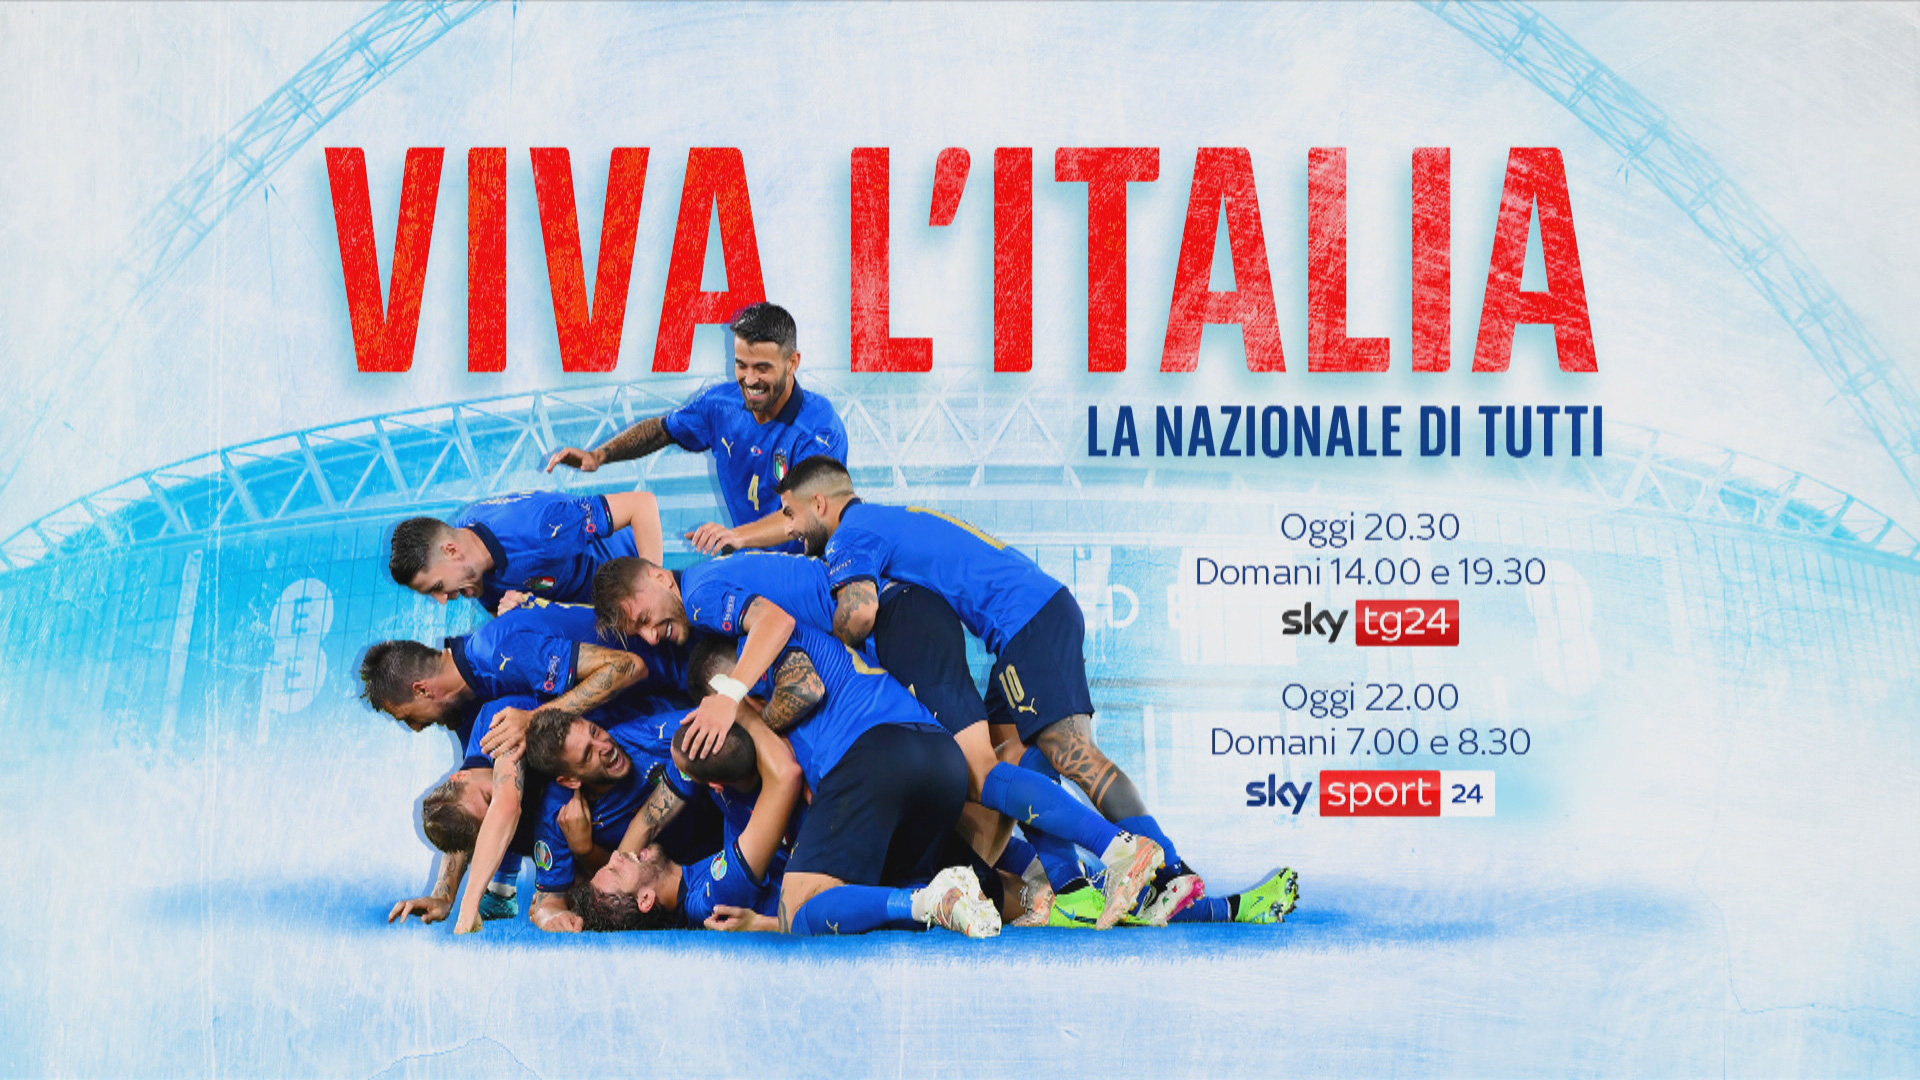 Viva l'Italia - La Nazionale di tutti